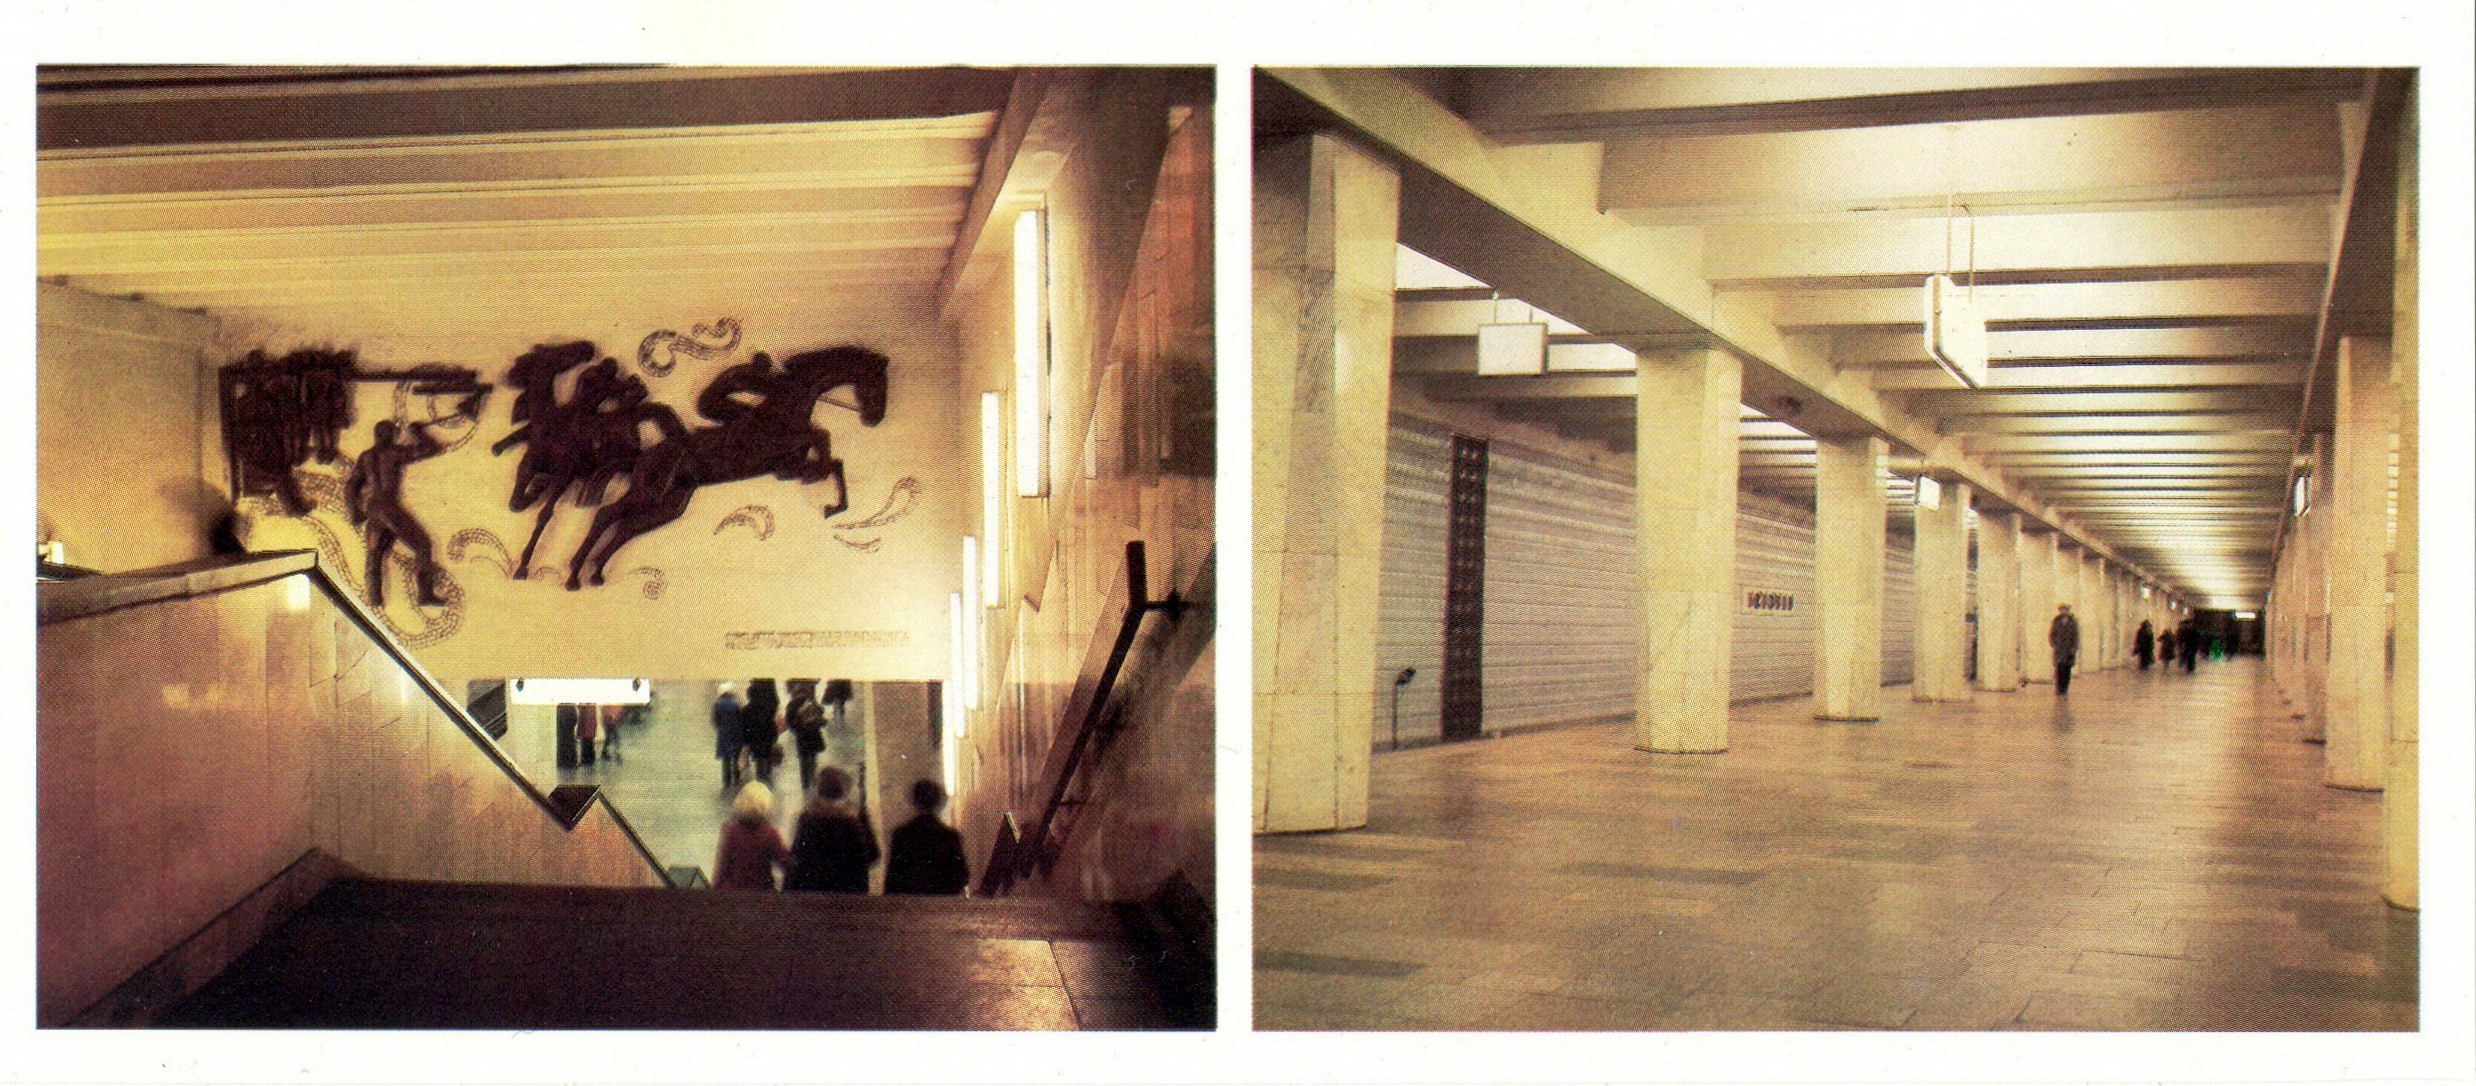 Московское метро беговая. Московский метрополитен 1987. Станция метро Беговая Москва в 1990е. Московское метро 1987 года. Станция метро Беговая в 90е.